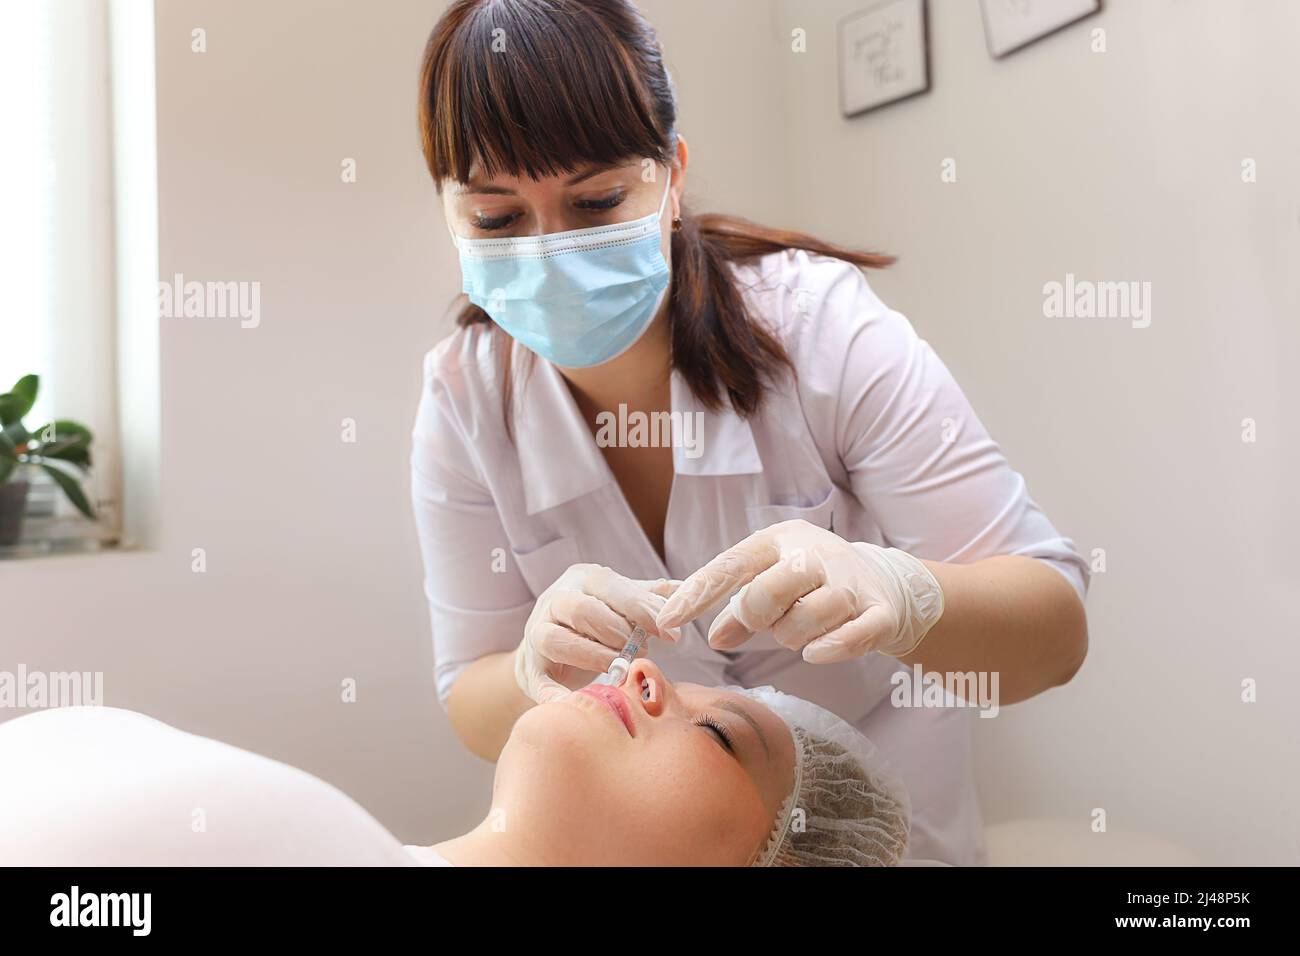 Der Kosmetologe lehnt sich über den Klienten und macht Injektionen in die Lippen mit Hyaluronsäure, um sie zu erhöhen Stockfoto